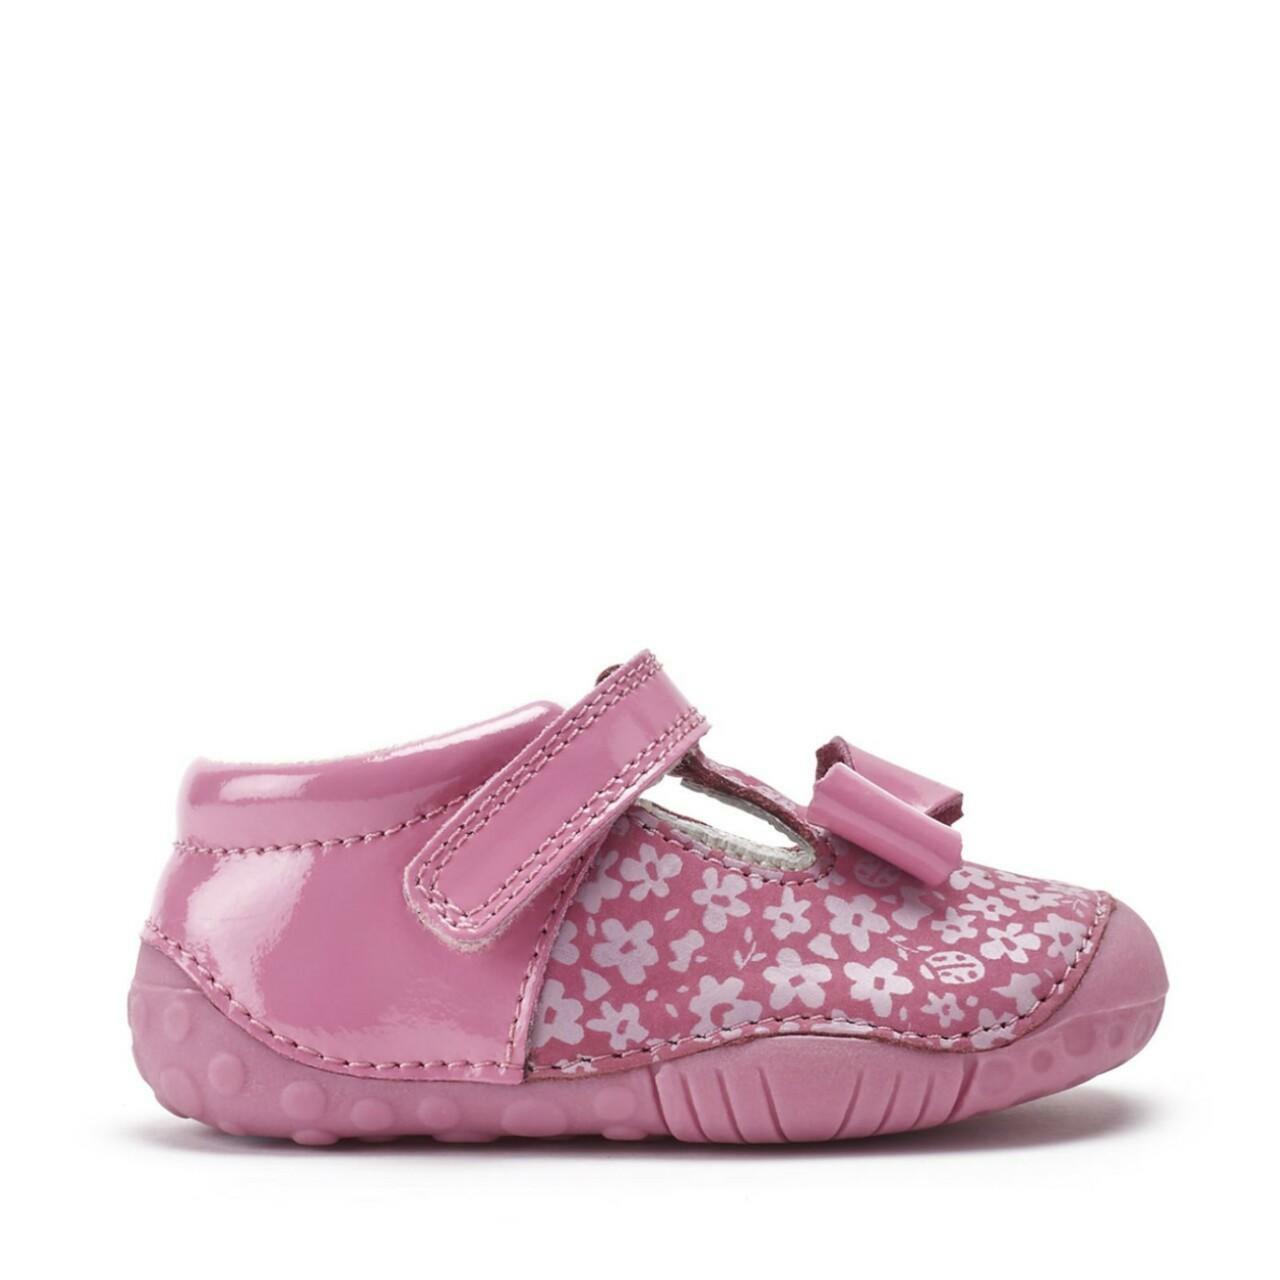 Start-Rite wiggle pre walker pink - Kirbys Footwear Ltd